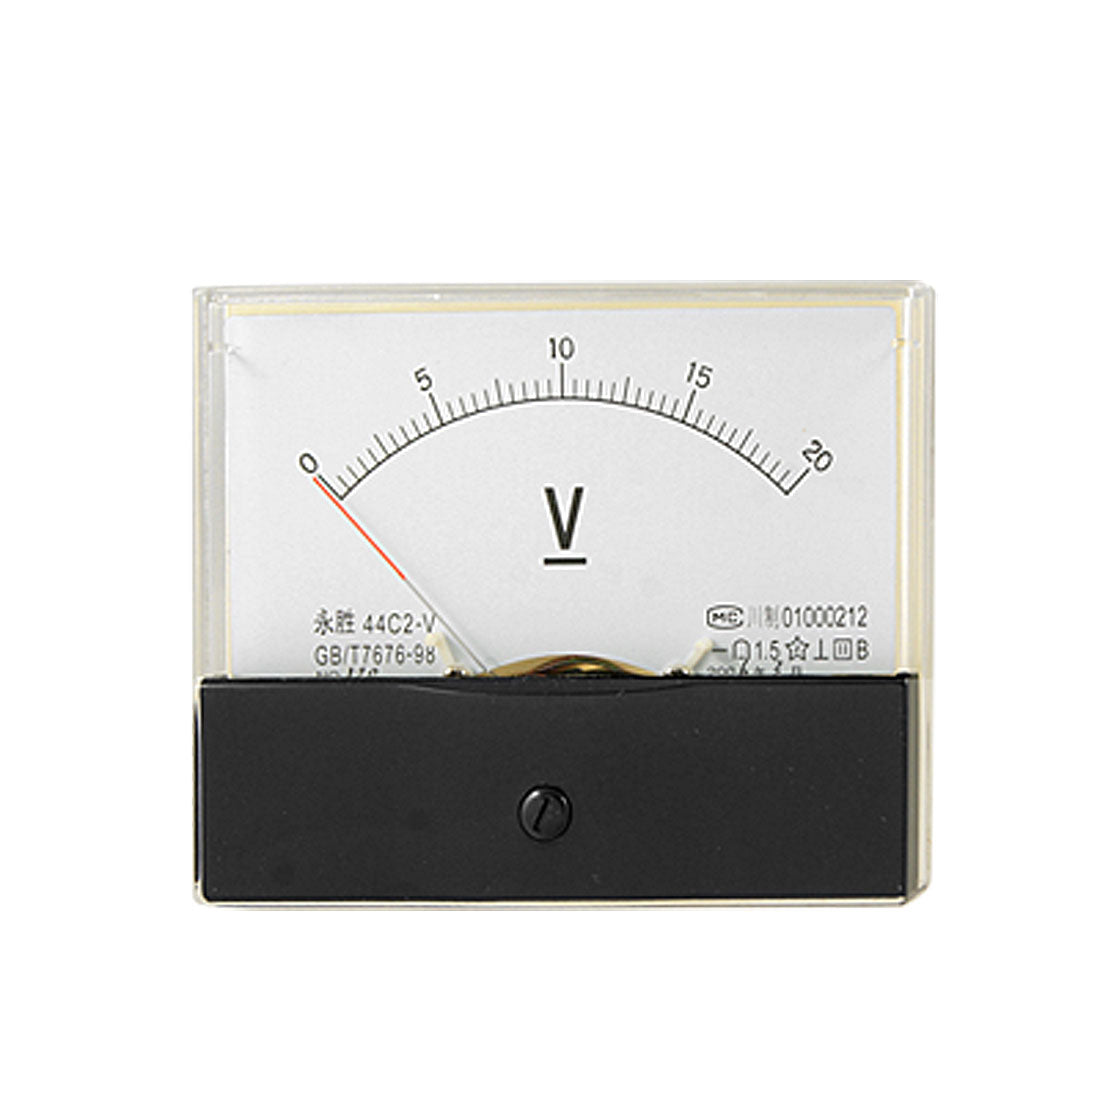 uxcell Uxcell 44C2 Fine Tuning 0-20V DC Voltage Panel Meter Analog Voltmeter Gauge